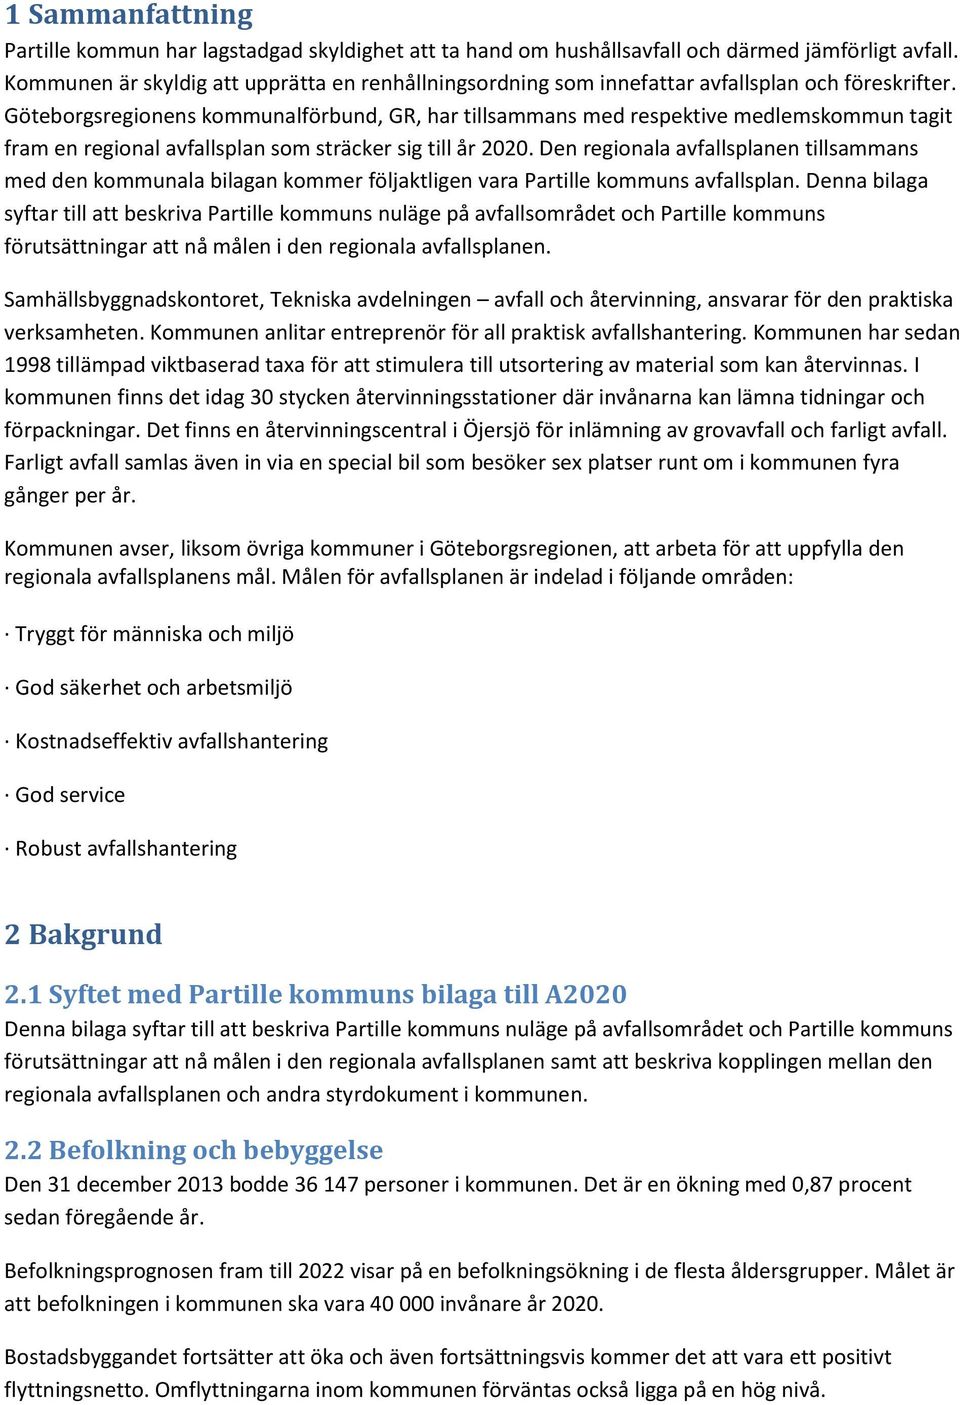 Göteborgsregionens kommunalförbund, GR, har tillsammans med respektive medlemskommun tagit fram en regional avfallsplan som sträcker sig till år 2020.